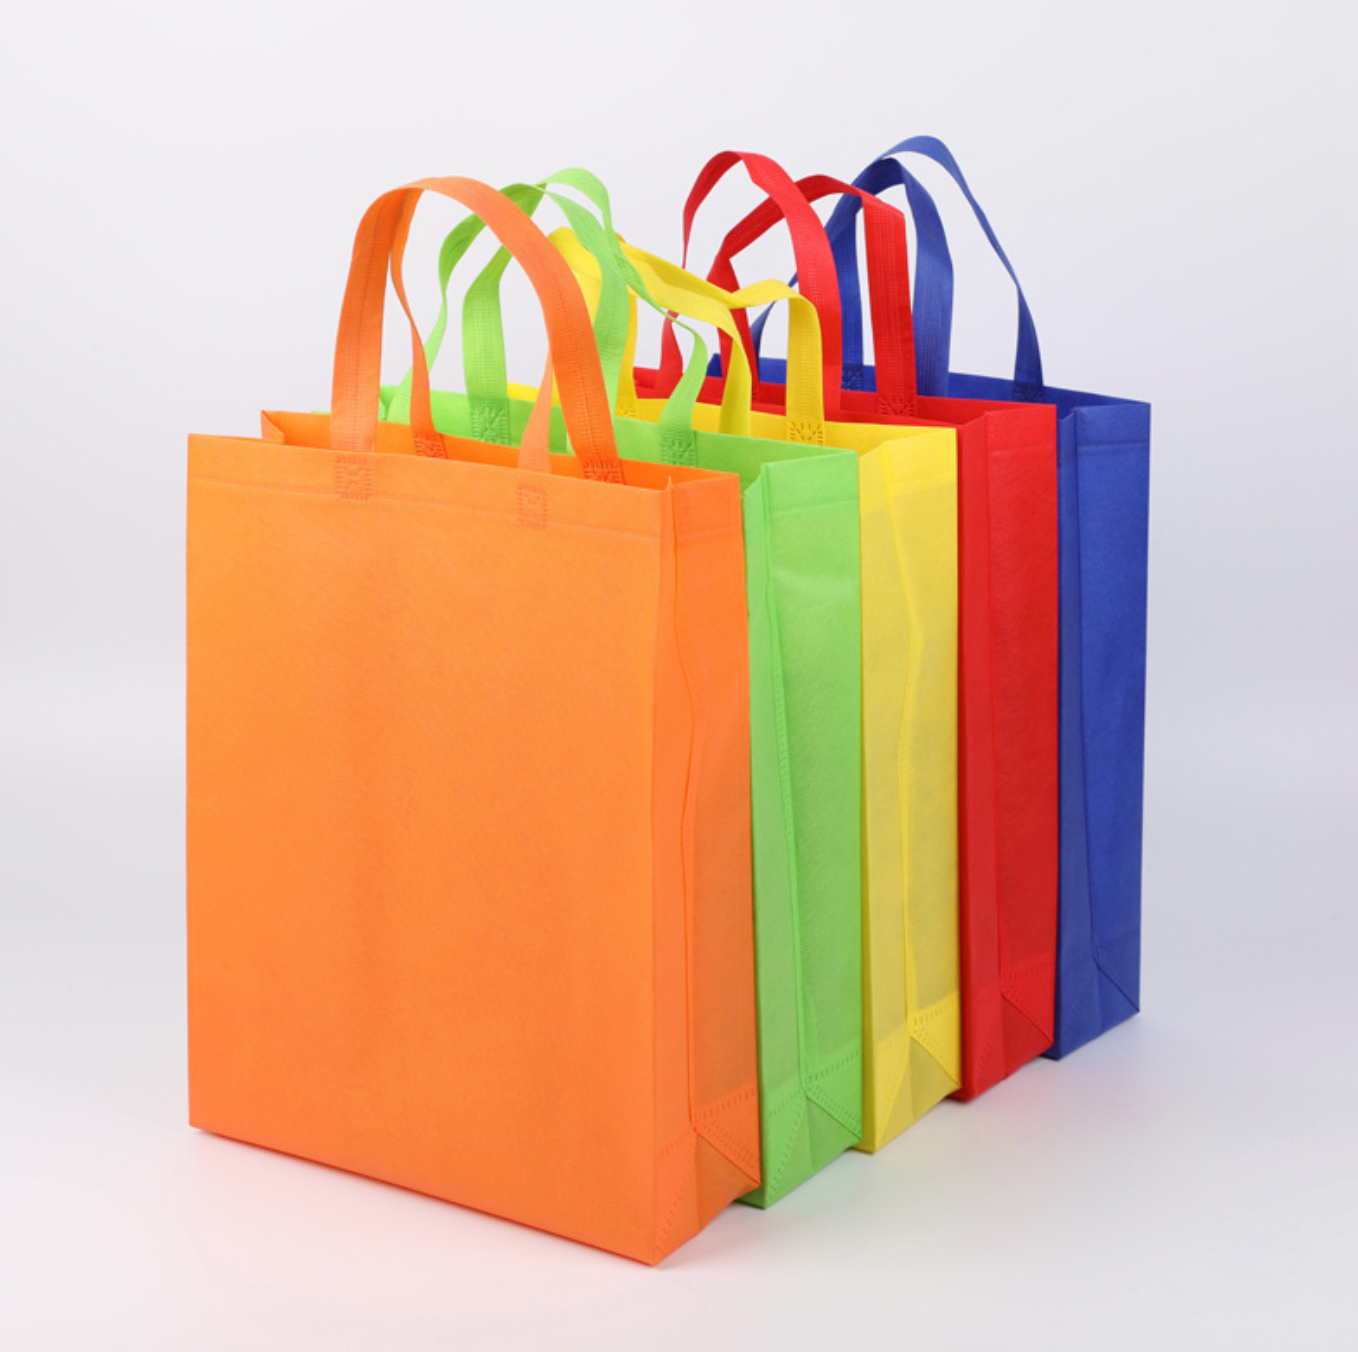 直立不織布環保購物袋印刷- 禮品、贈品、客製化禮贈品專家| 禮歐禮贈品